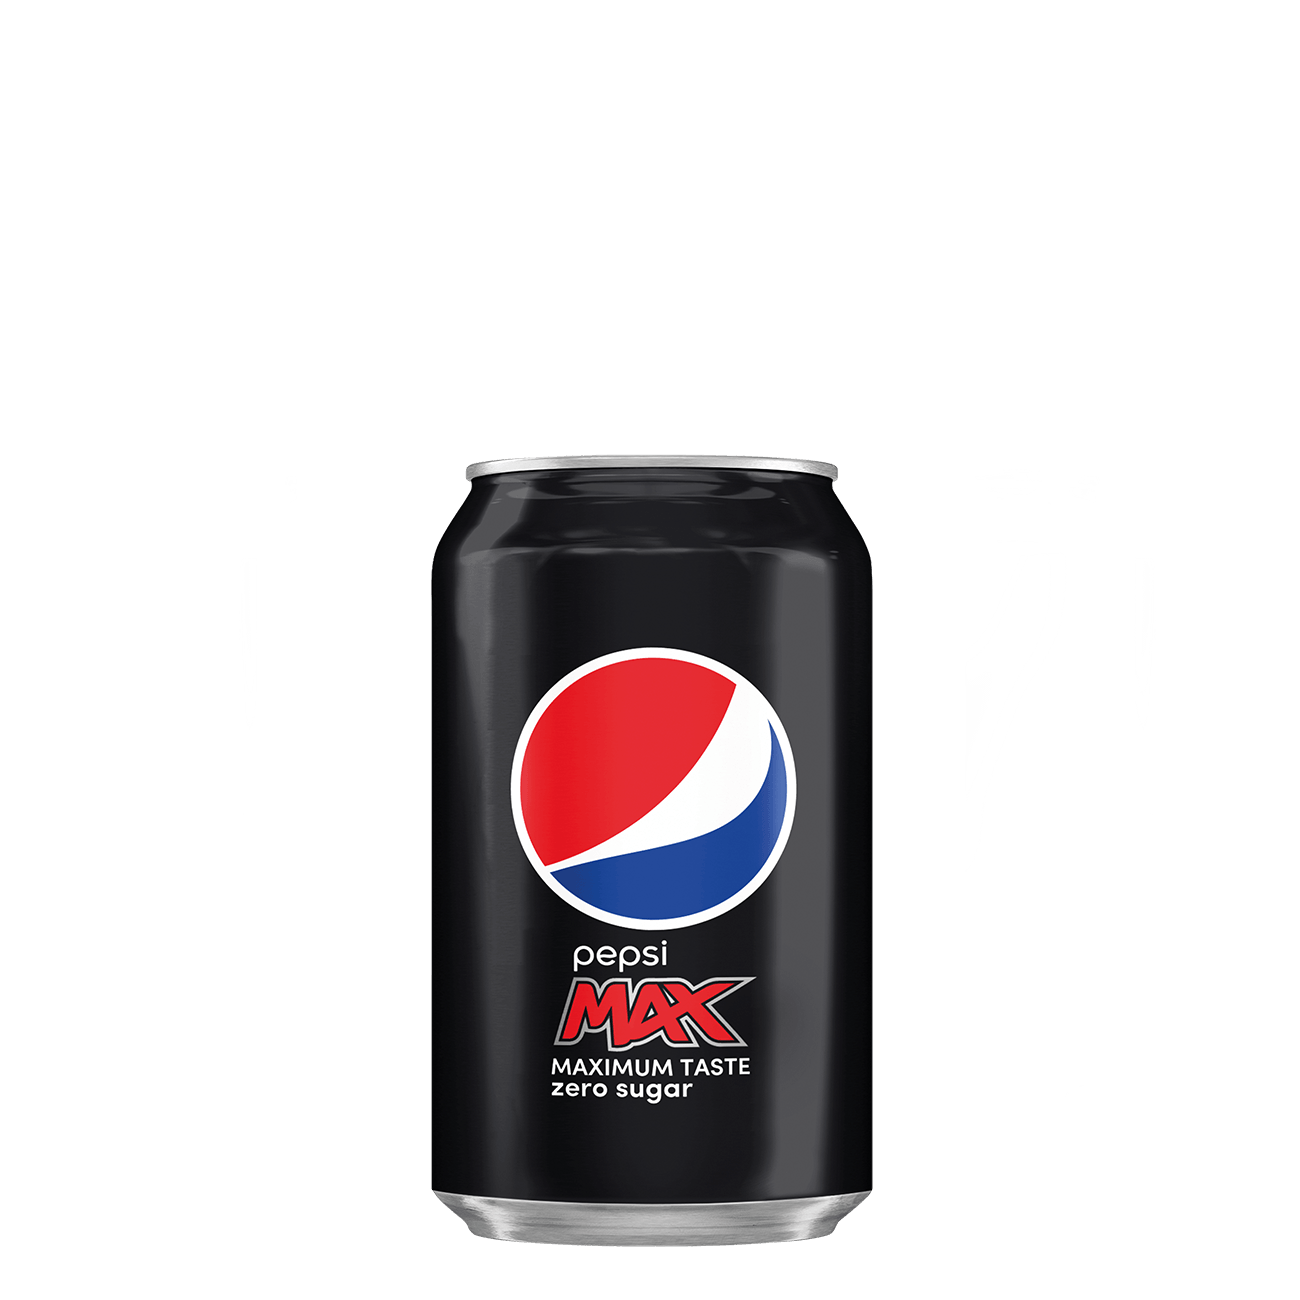 Pepsi Max (33cl)